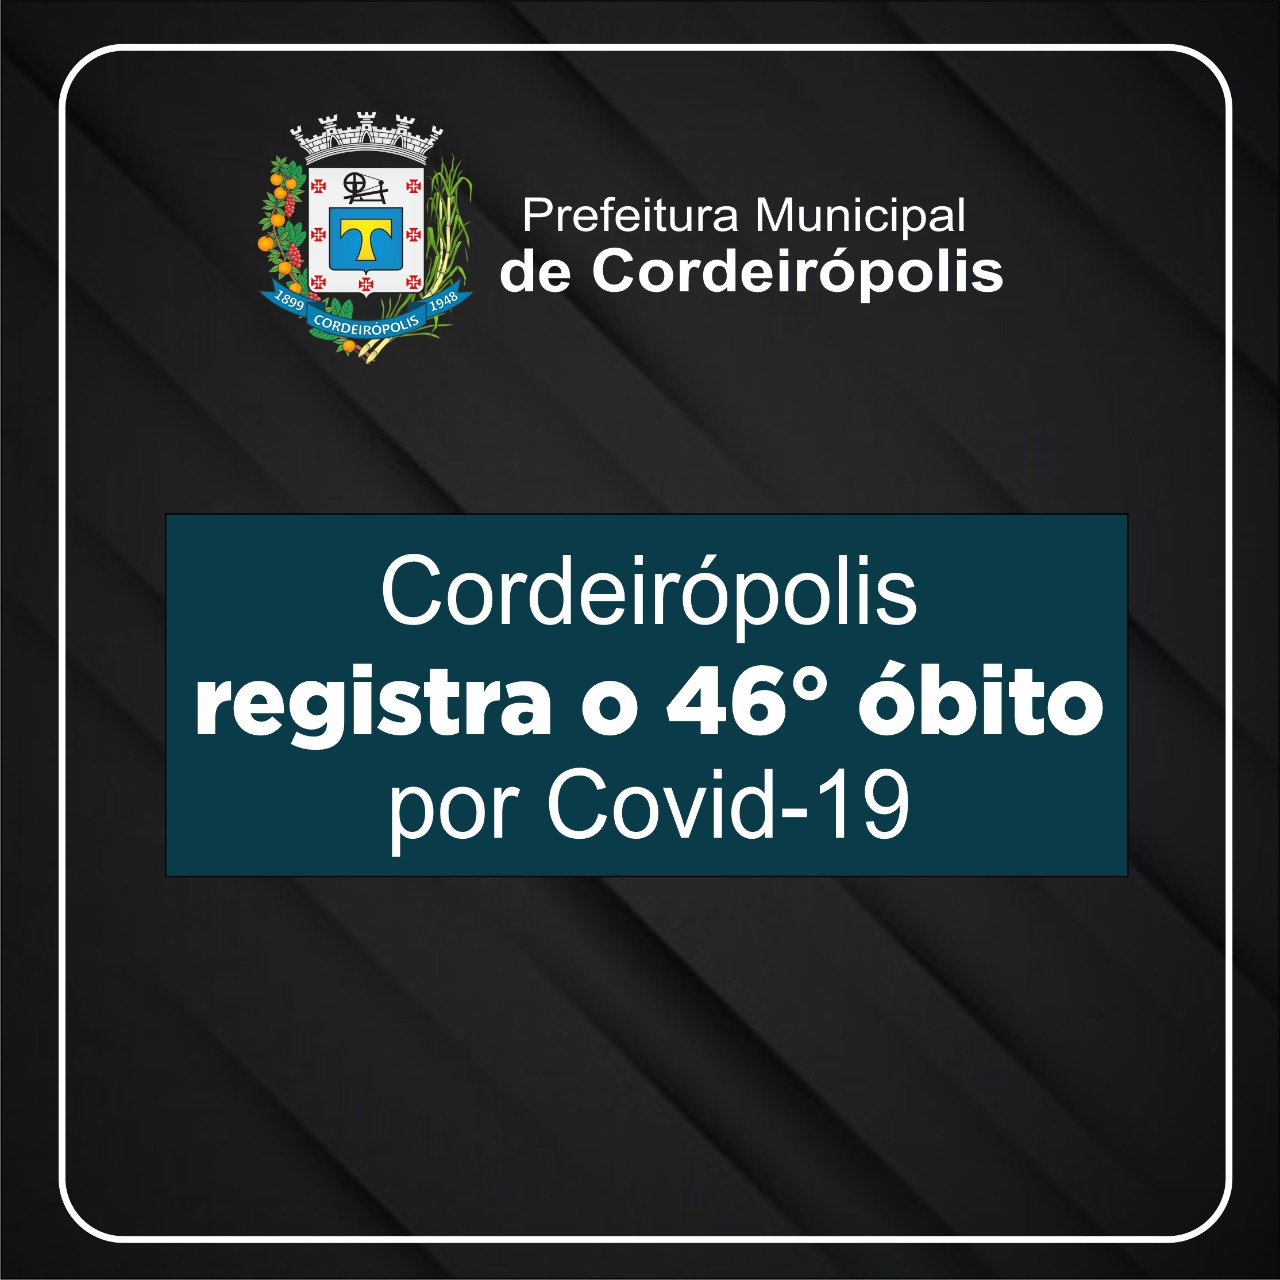 Cordeirópolis registra o 46° óbito decorrentes de Covid